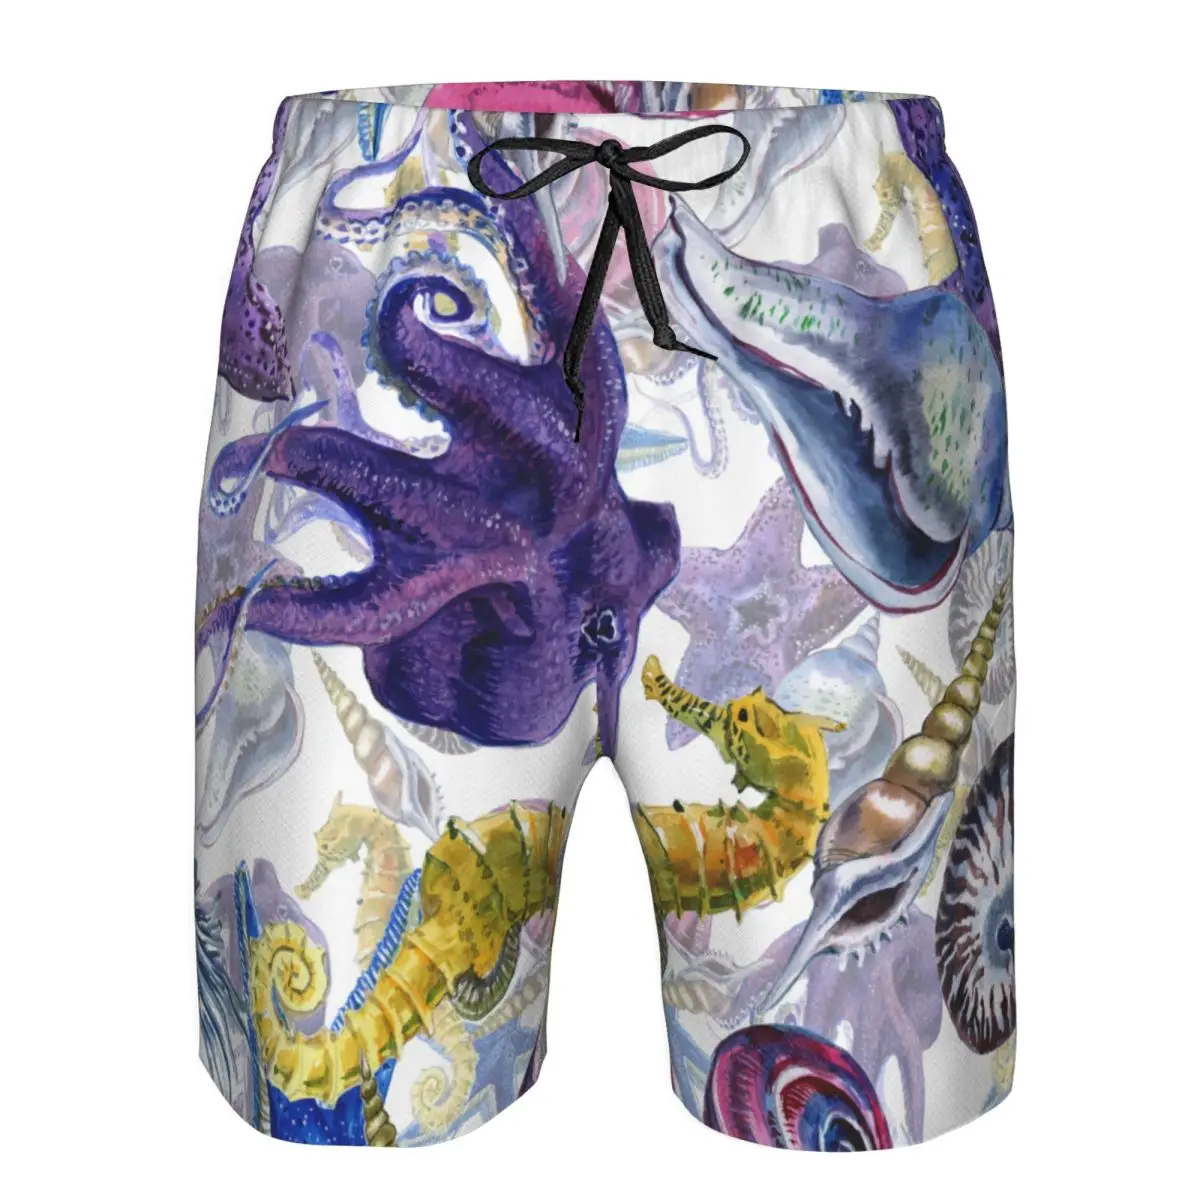 גברים חוף קצר מהיר ייבוש שחייה המטען בצבעי מים חוף צדפים יצורים תת בגדי ים בגדי ים בגד ים קצר - 0